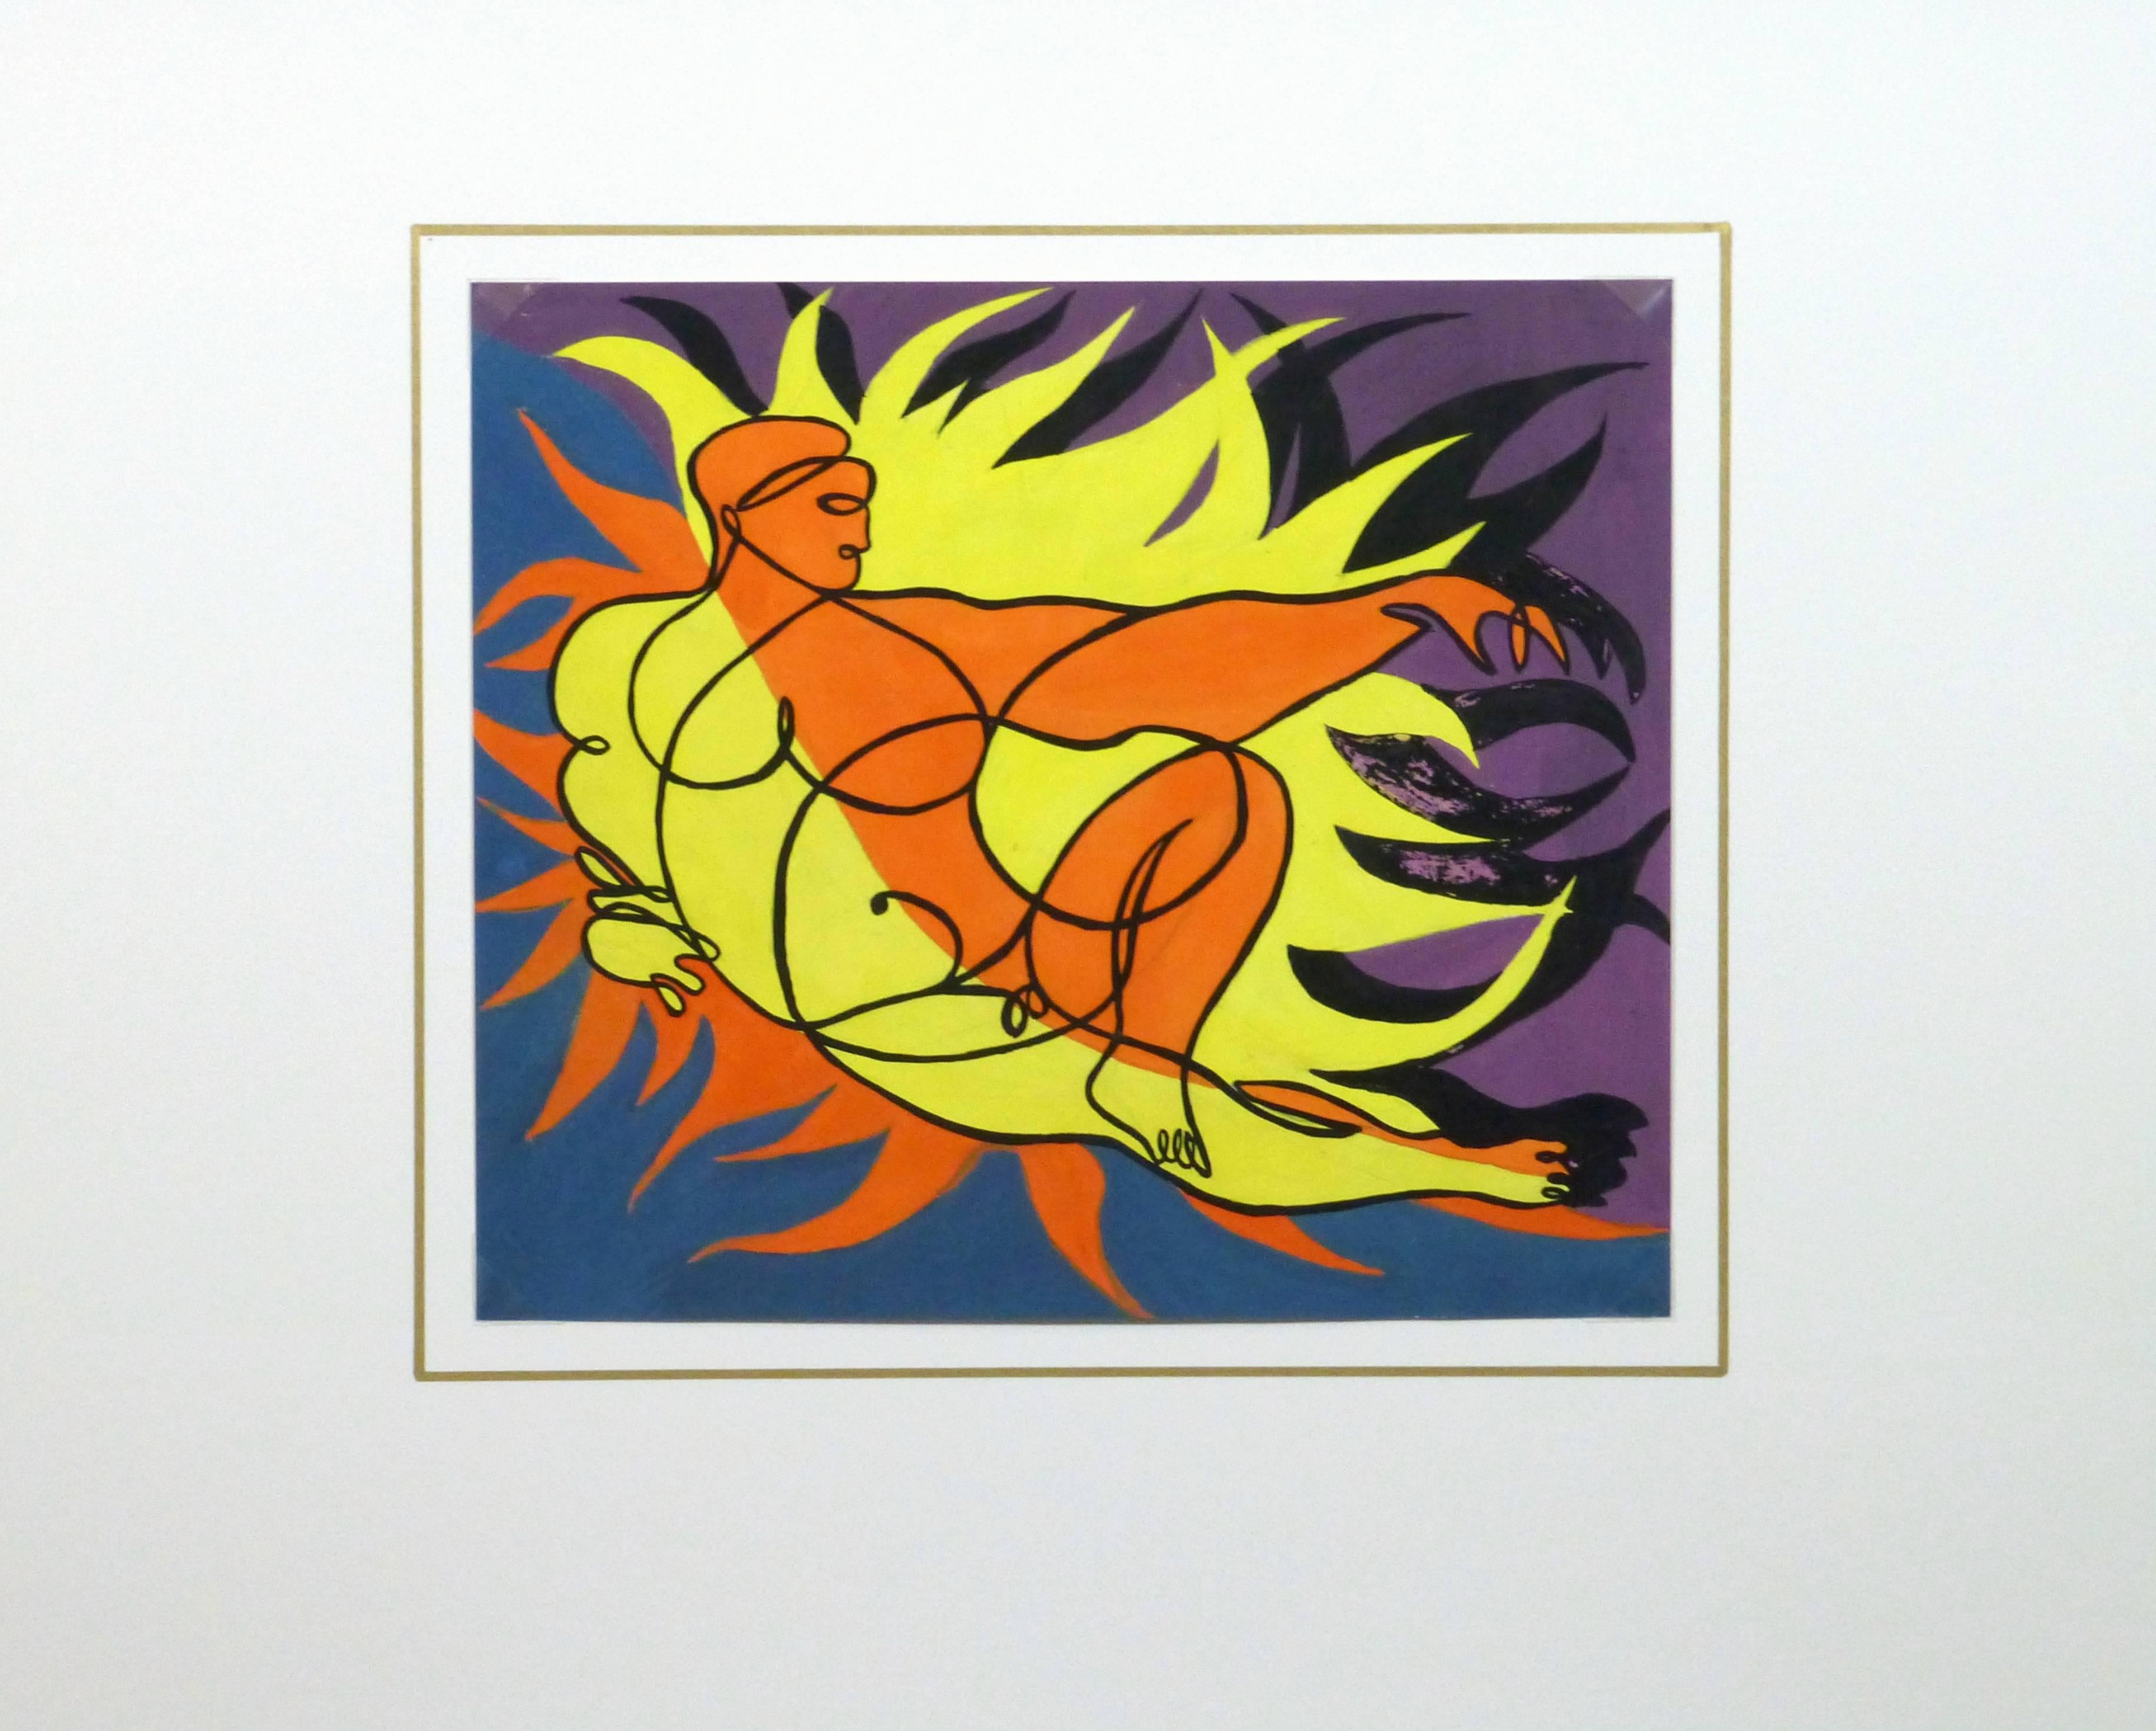 Saisissante peinture acrylique abstraite d'une figure masculine nue dans une pose allongée et entourée de flammes vives par Beugnet, vers 1950. 

Œuvre d'art originale sur papier présentée sur un tapis blanc avec une bordure dorée. Le tapis